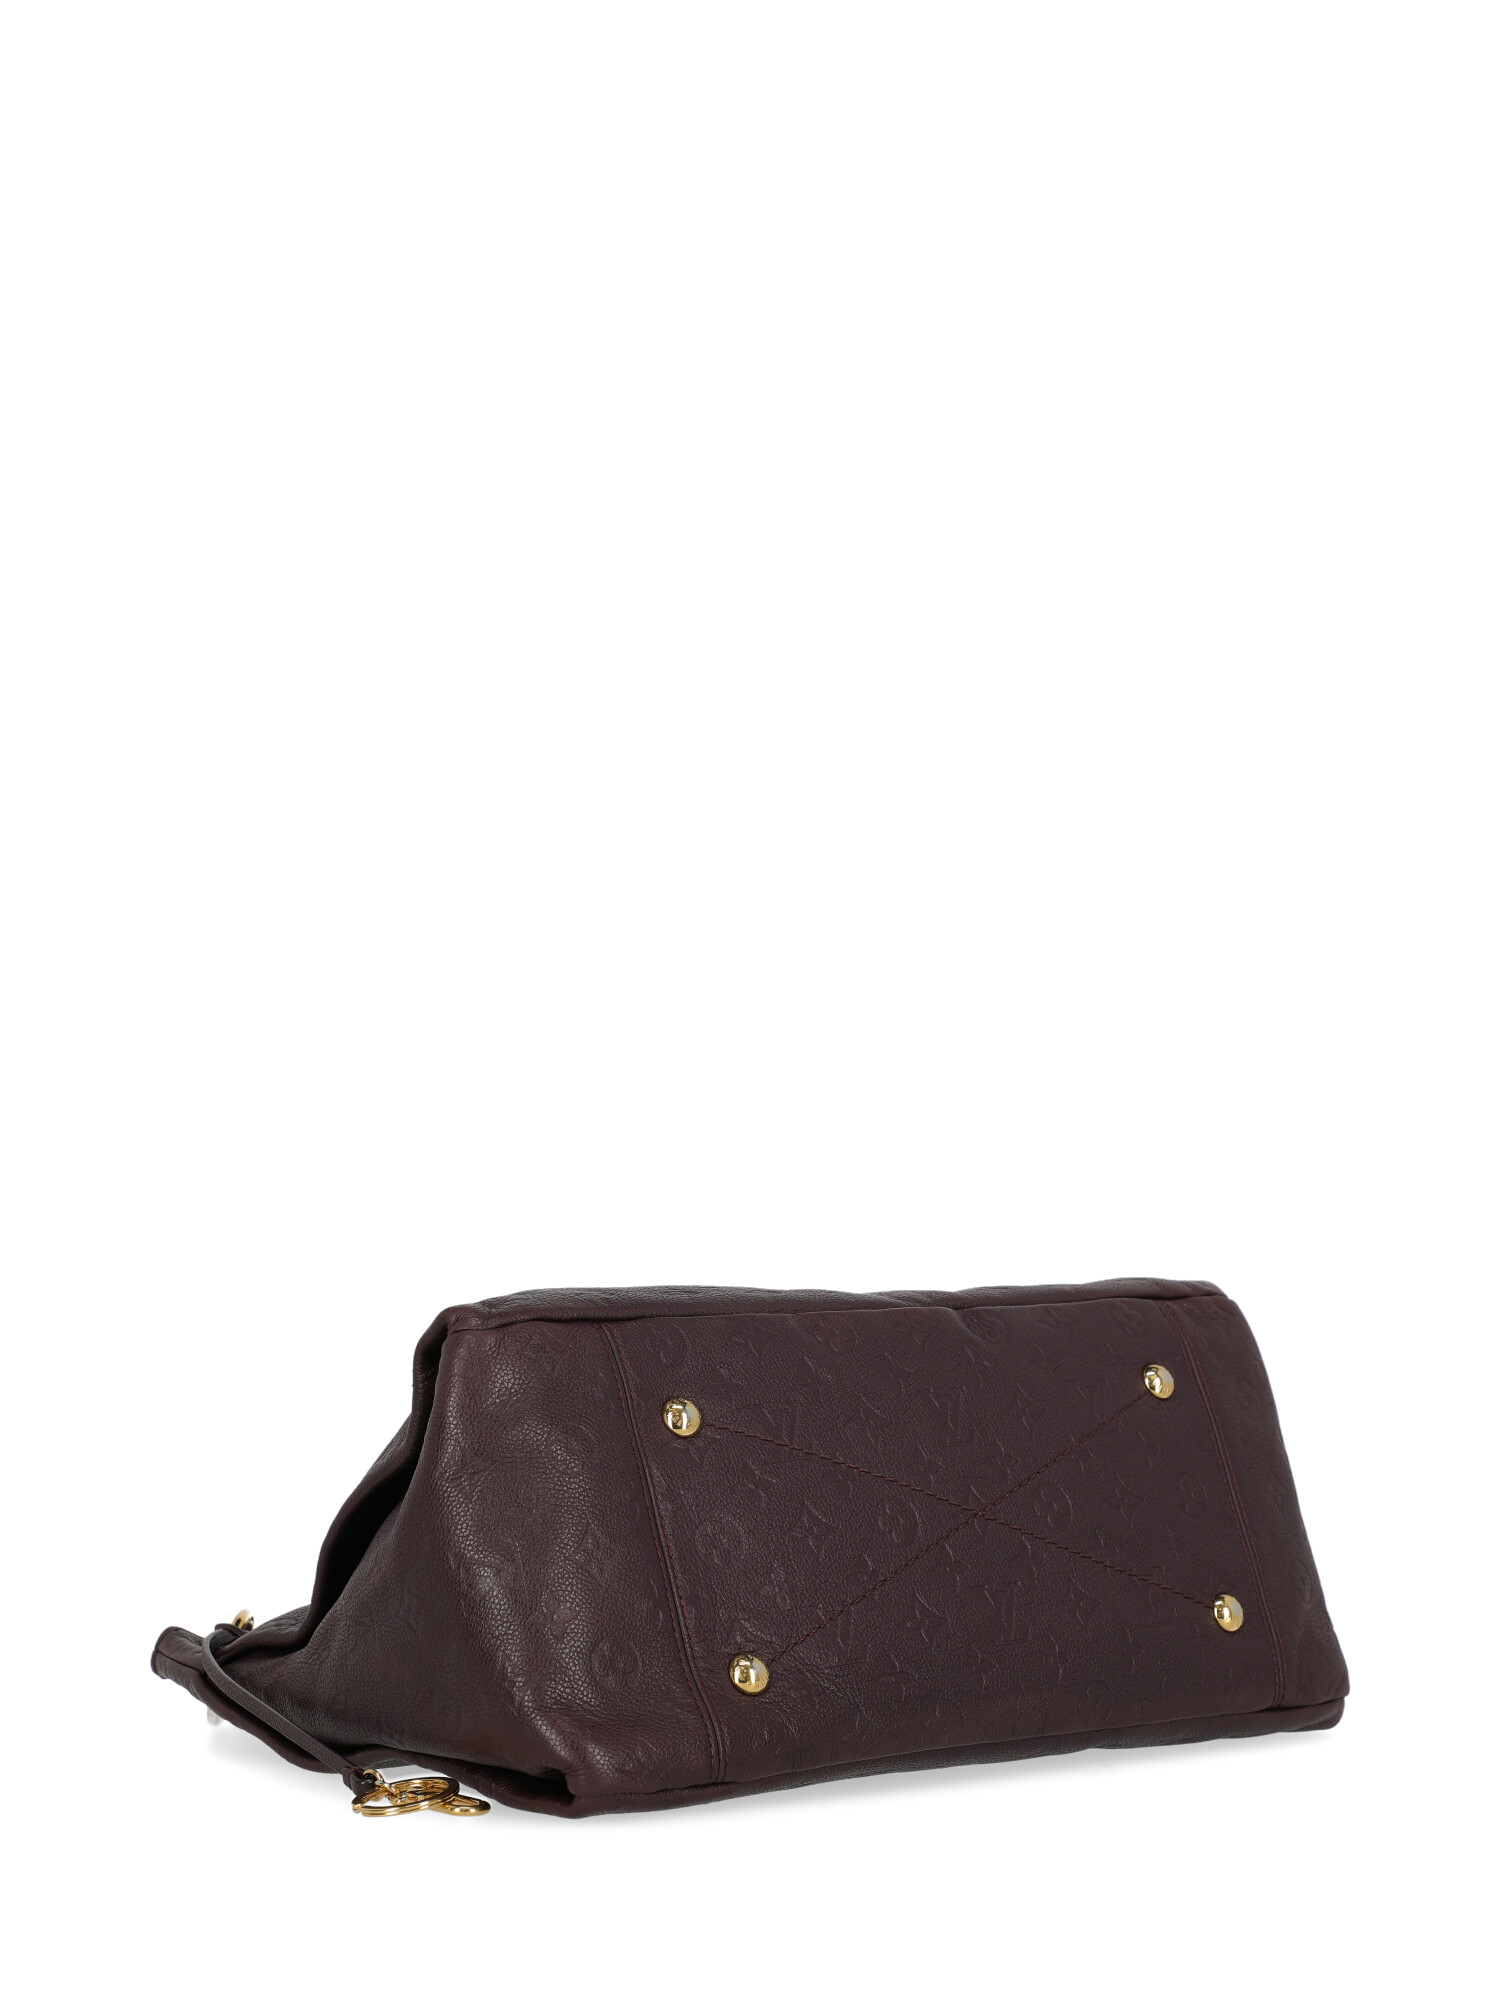 Louis Vuitton Special Price Women Handbags Artsy Purple | eBay